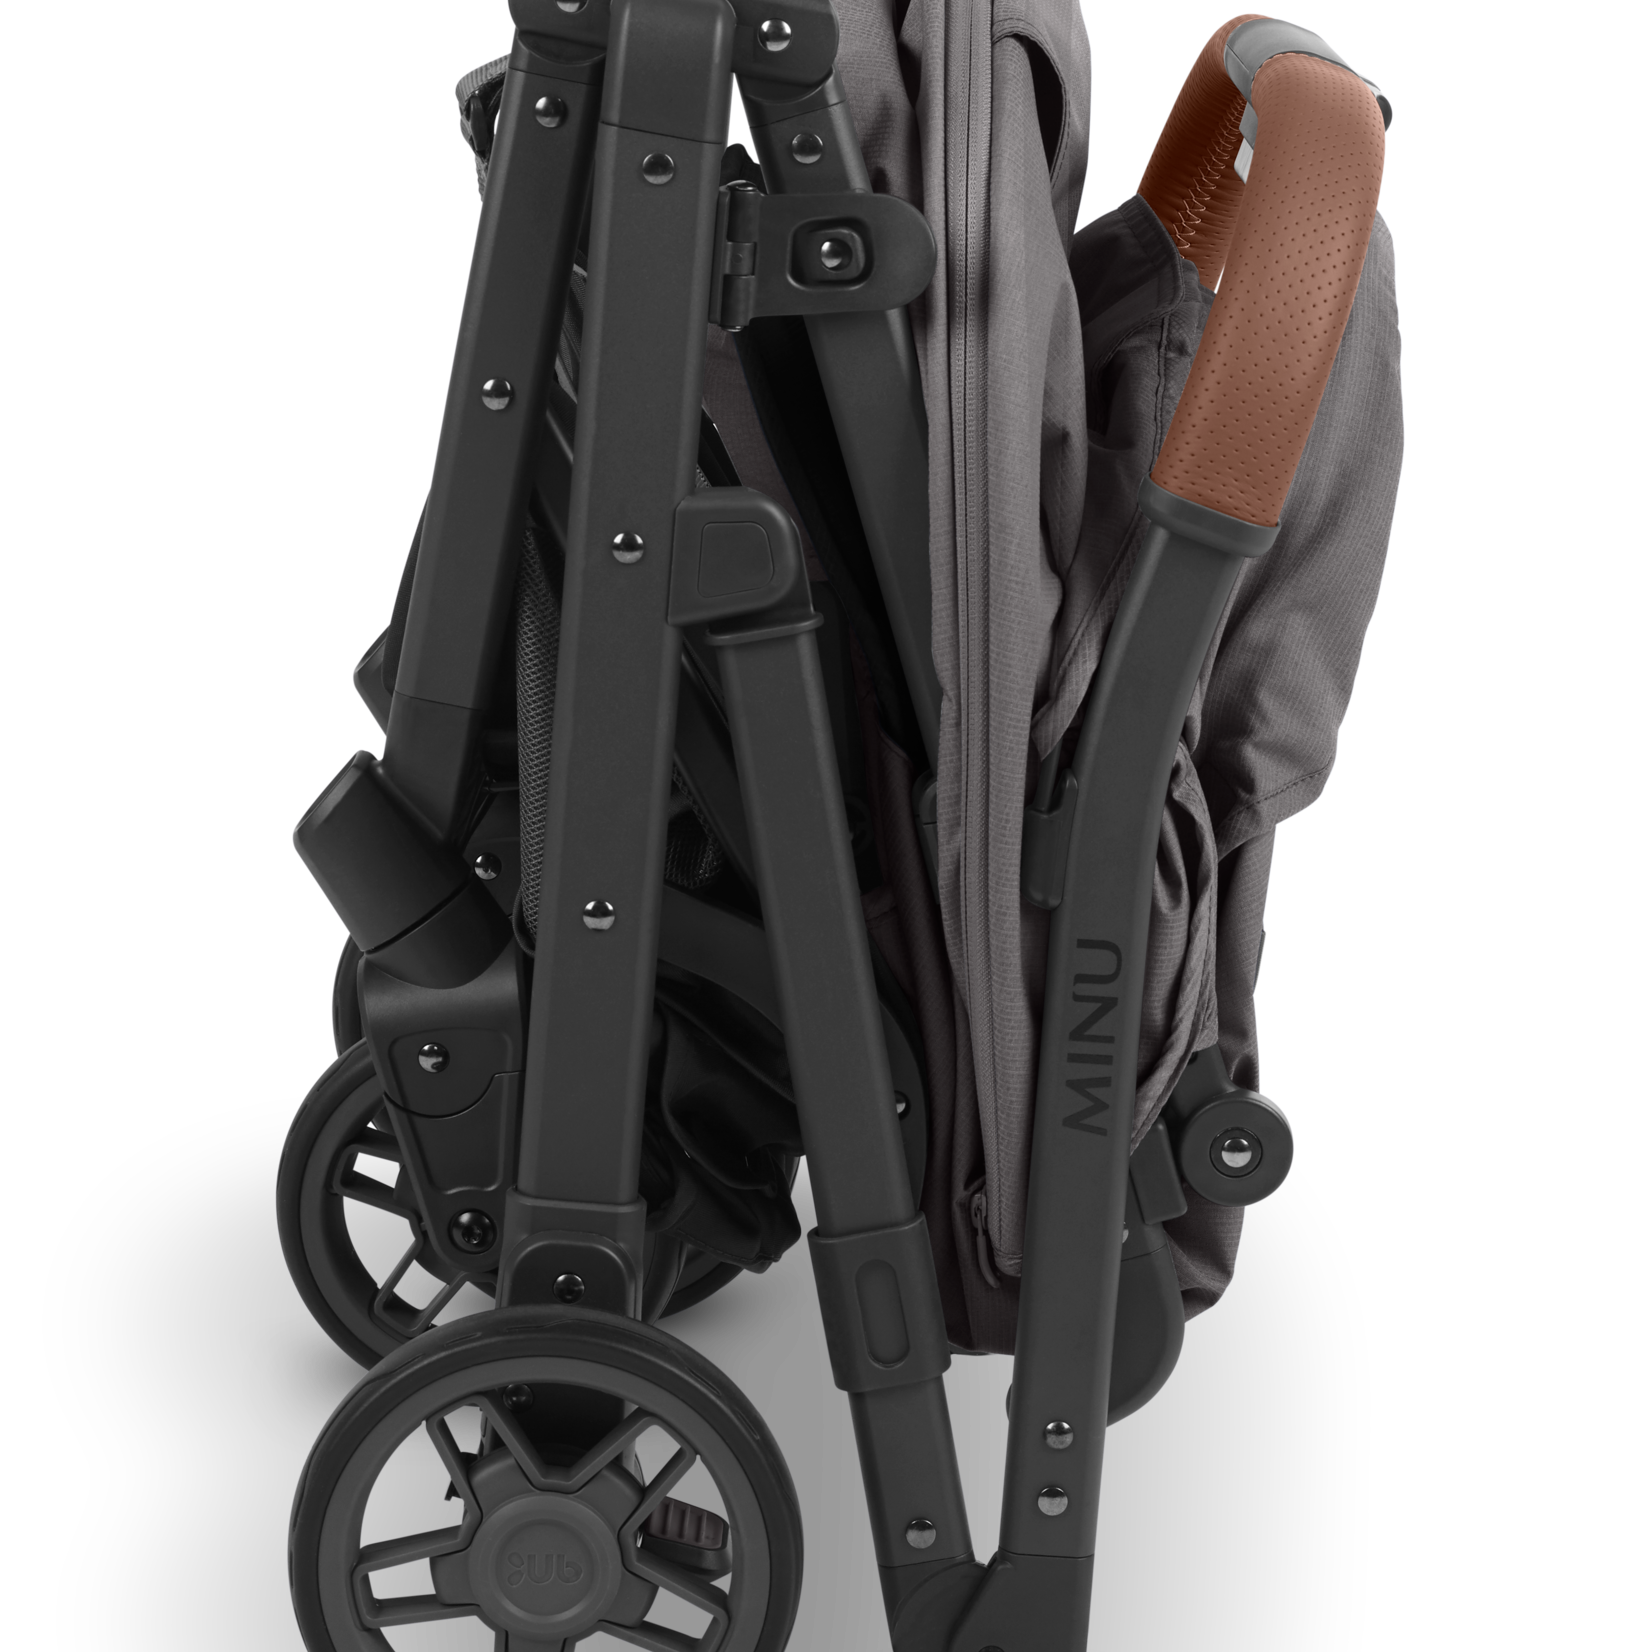 Uppababy MINU V2 Stroller - Charcoal Melange/Carbon/Saddle Leather (Greyson)